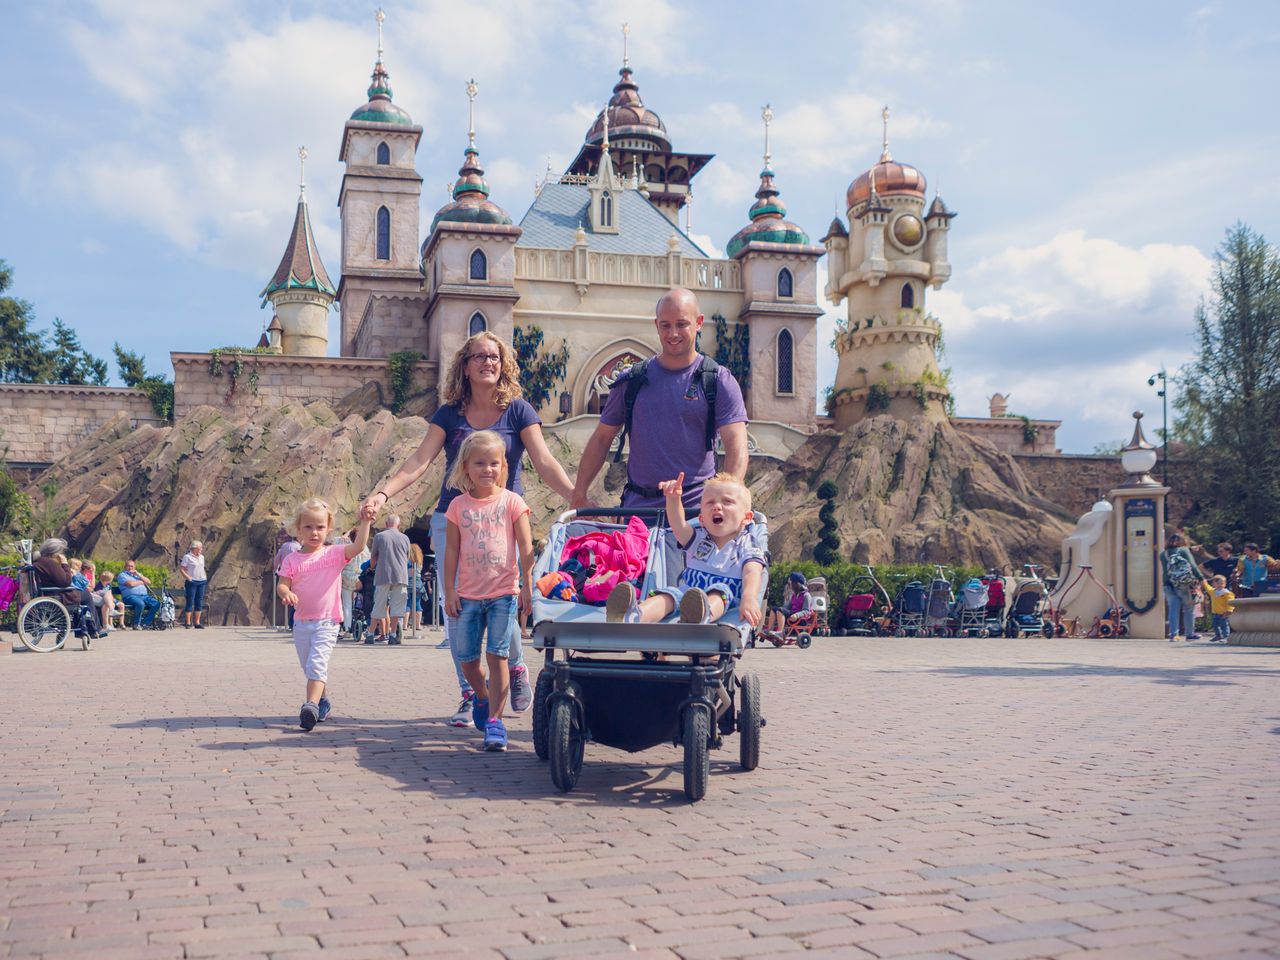 Familienzeit im märchenhafteste Freizeitpark Europas